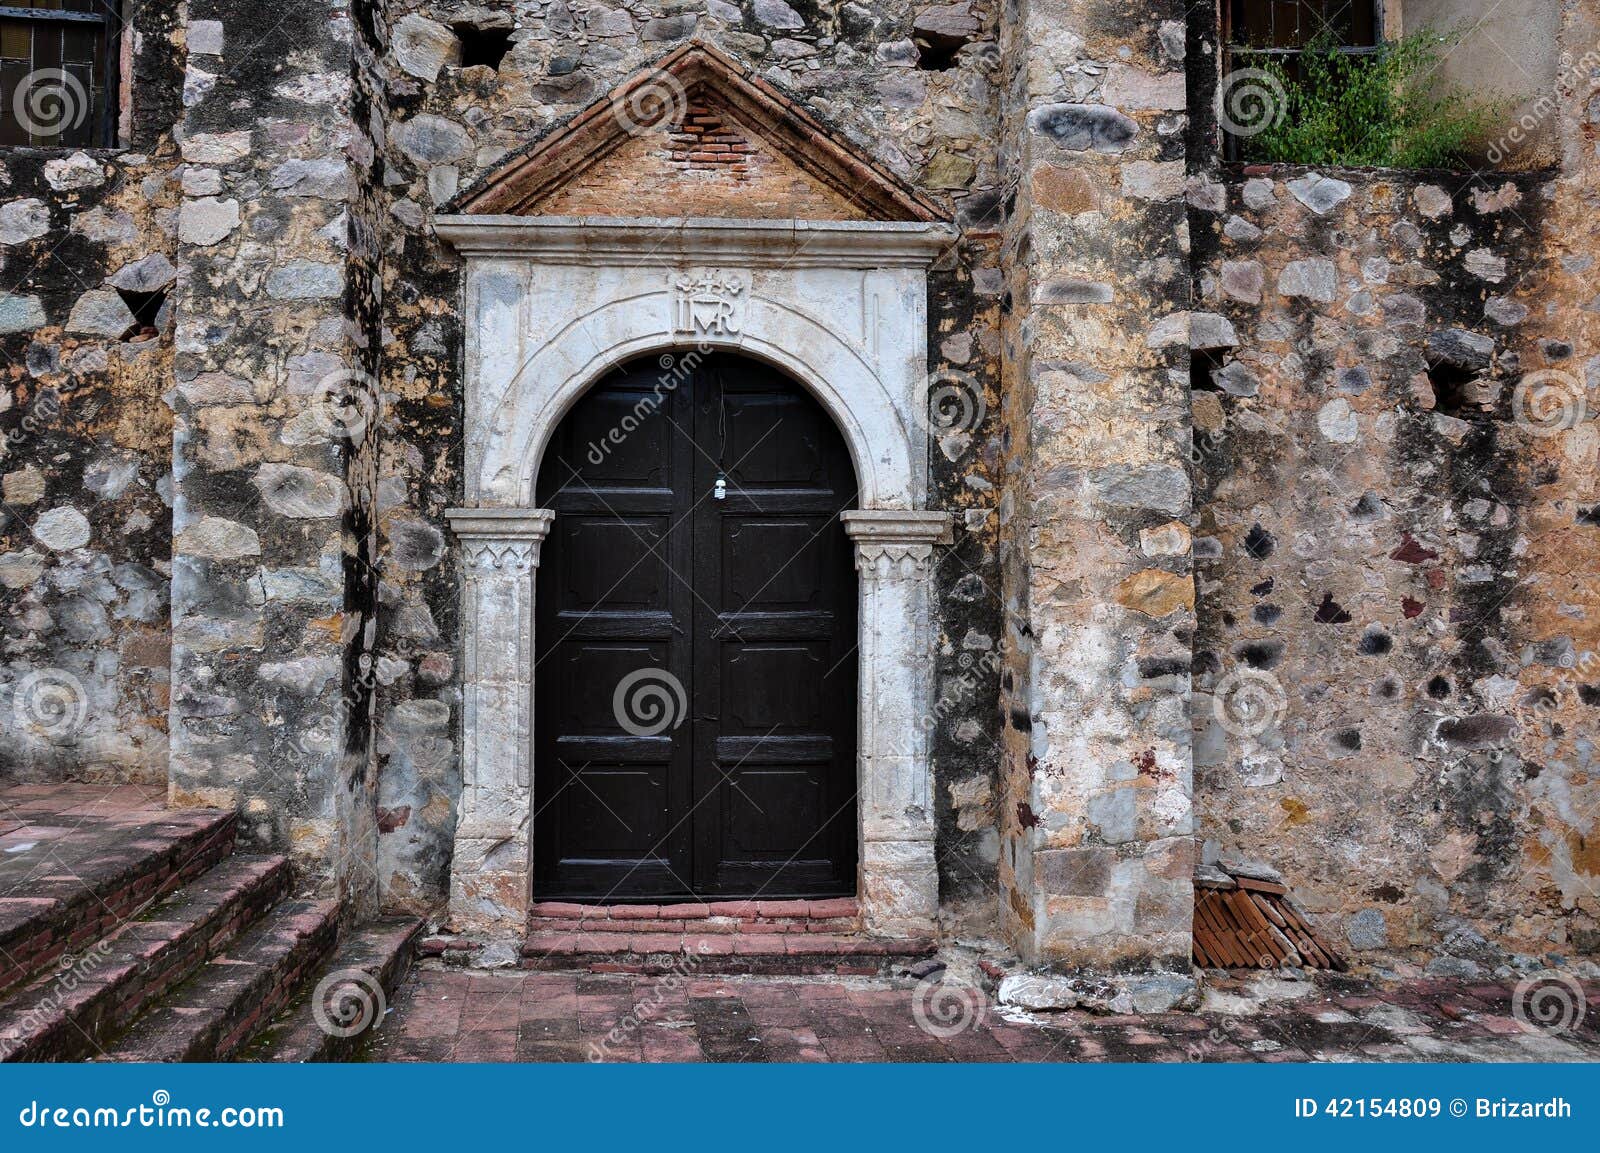 antique church door in la aduana, mexico